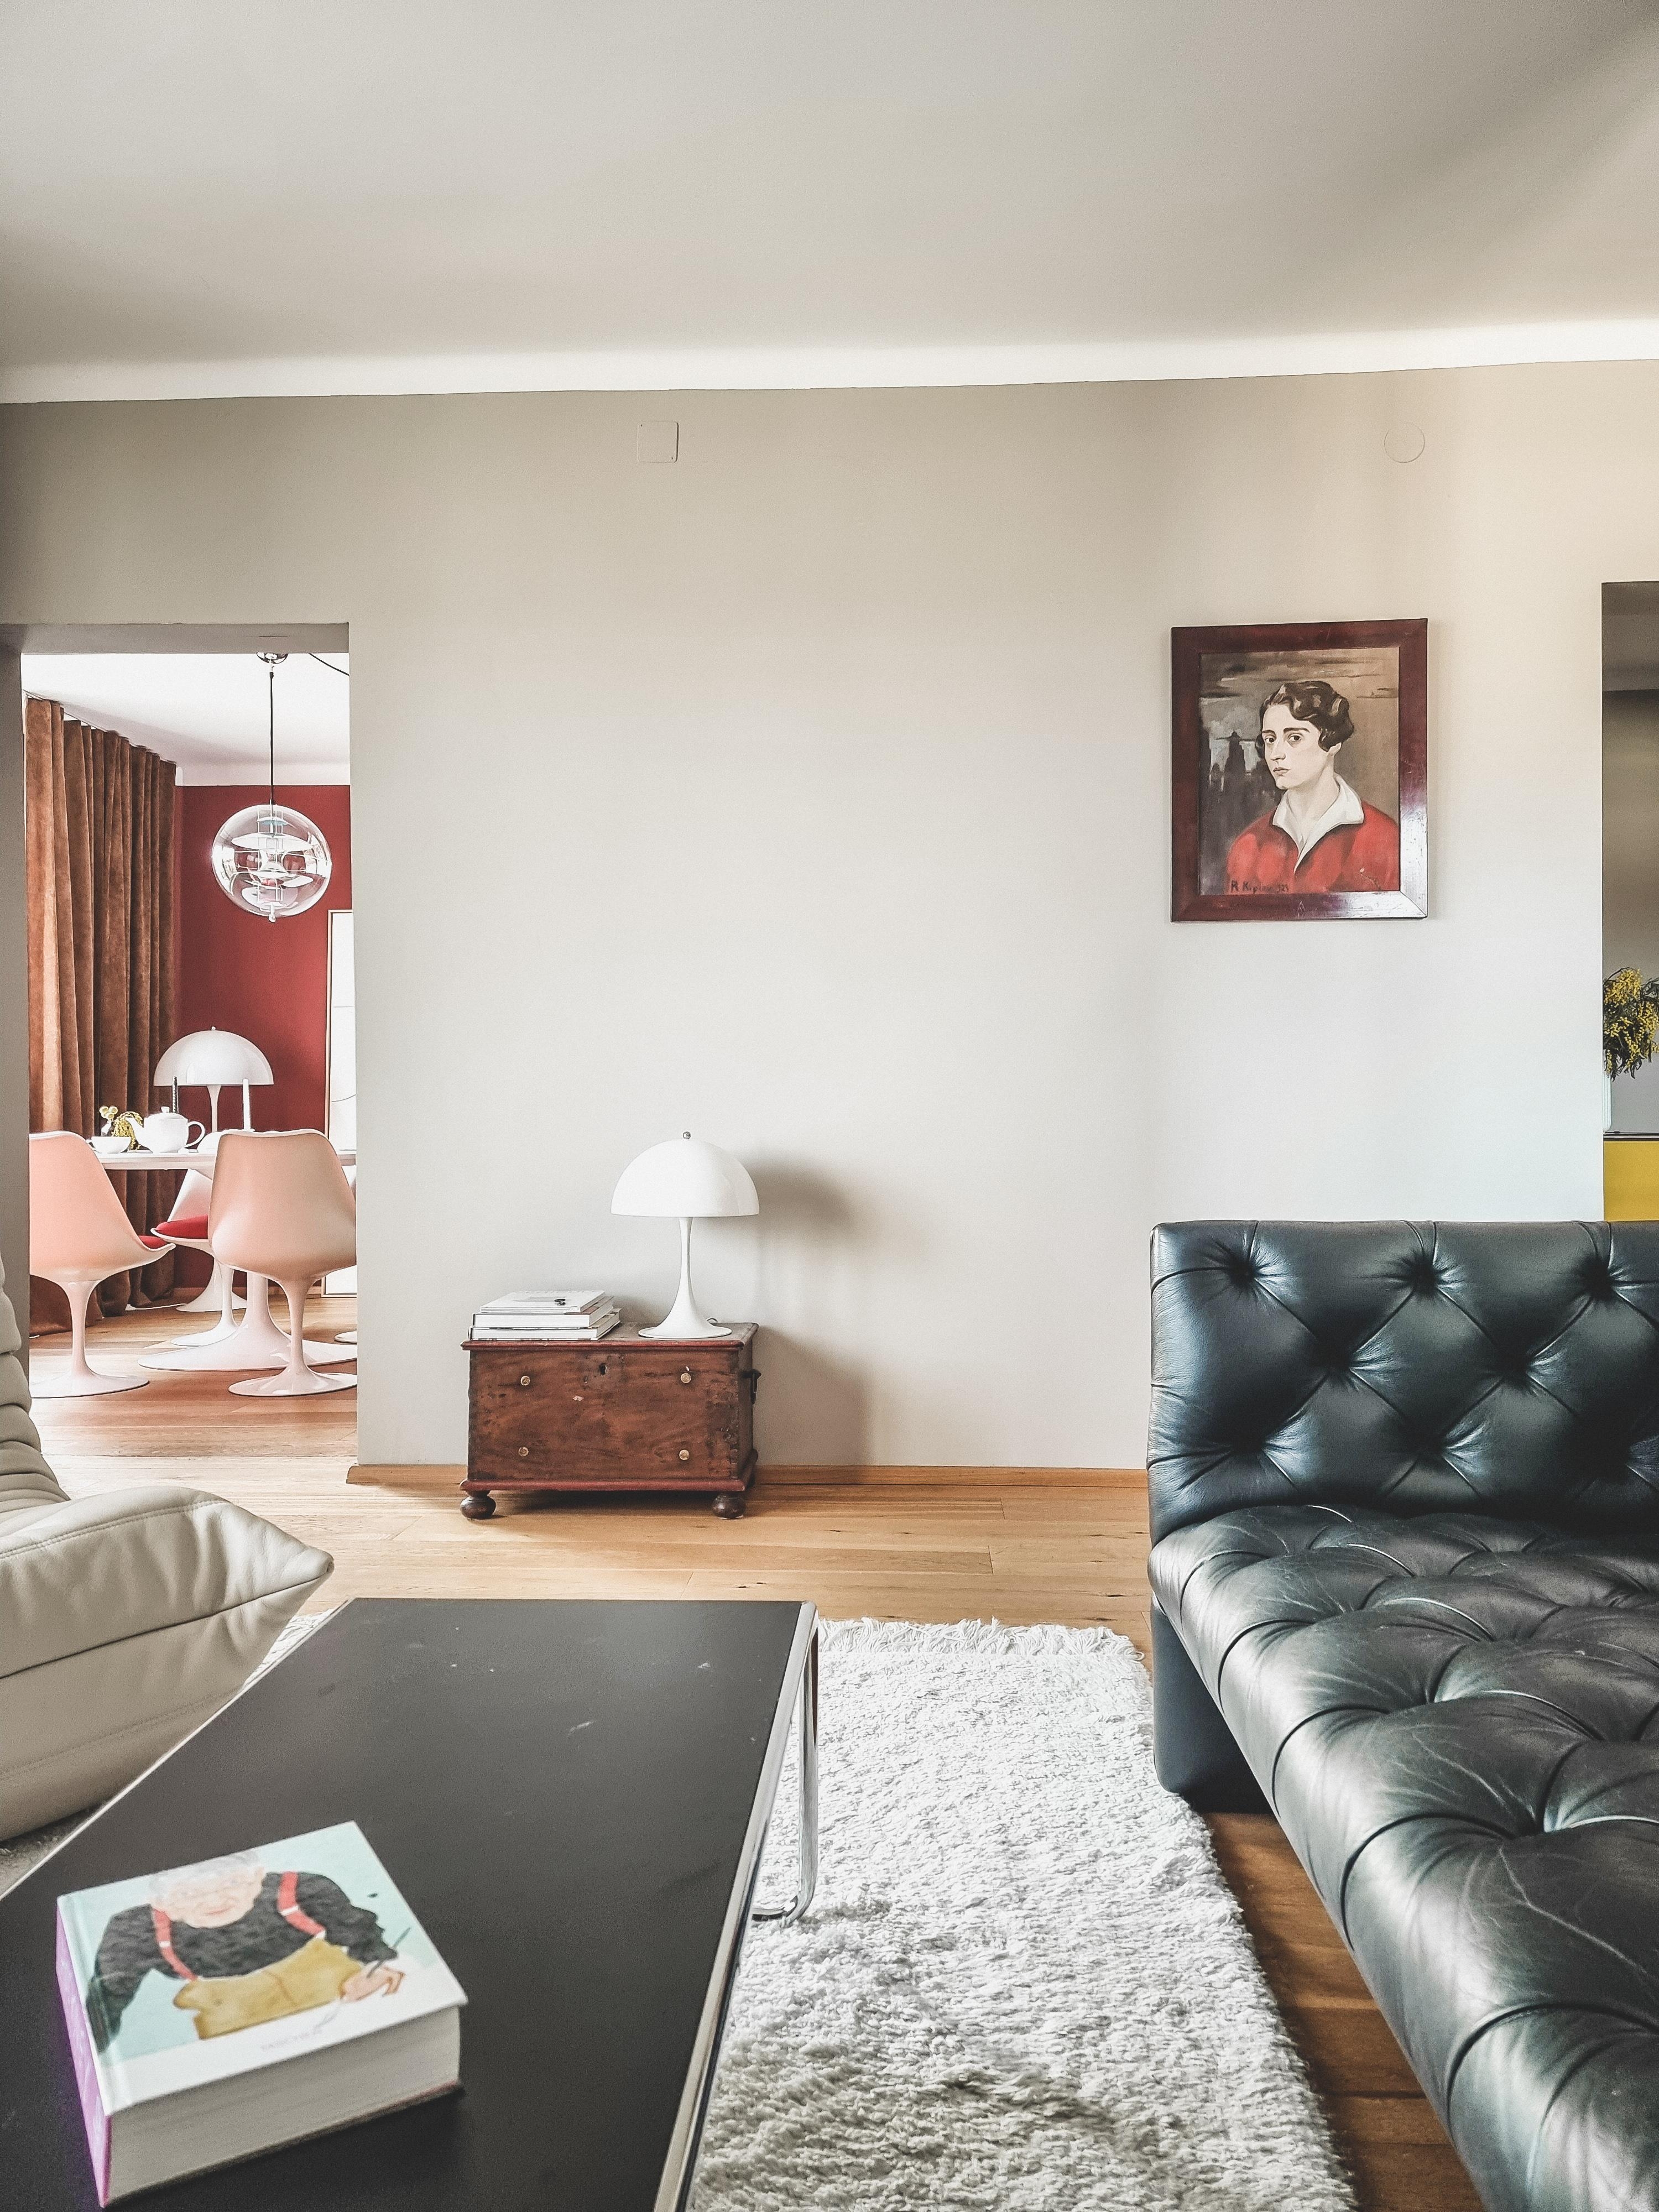 Ich wünsche euch ein tolles We 🩷
#livingroom #wohnzimmer #livingroominspo #midcenturymodern #designlover #louispoulsen #vintagelover